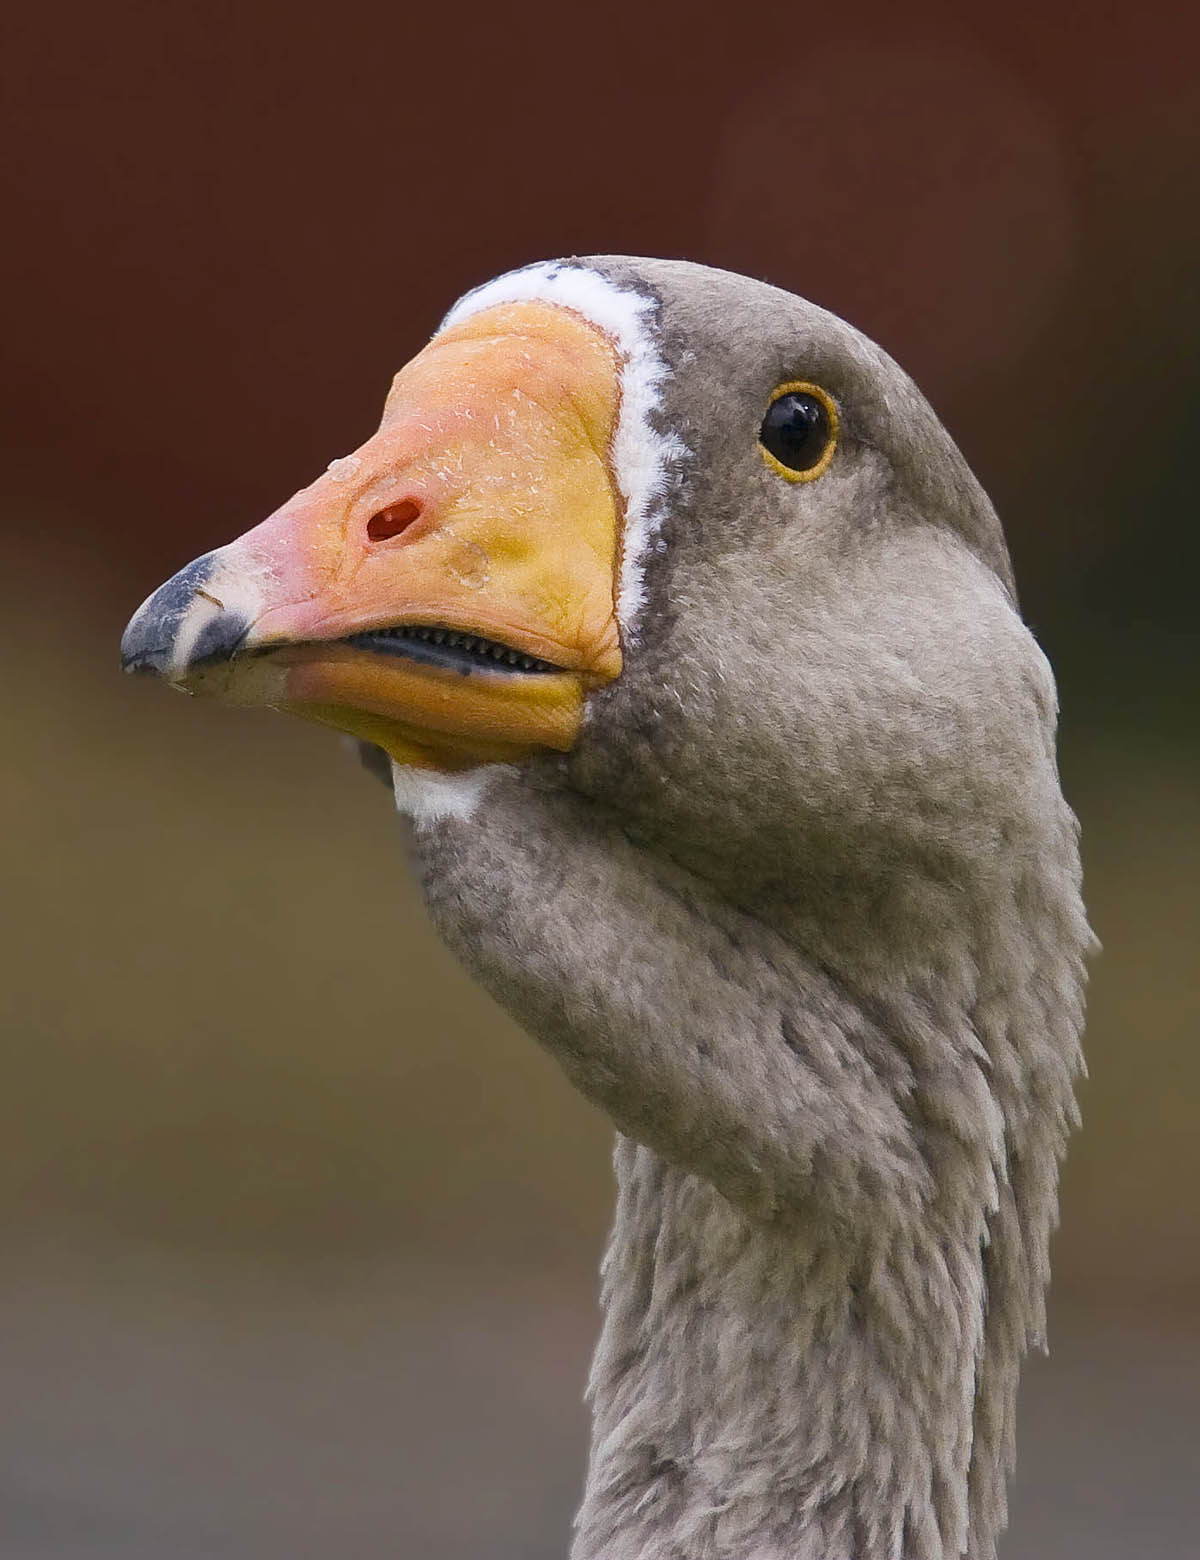  goose head with teeth grey orange beak black tip_MG_8525.jpg